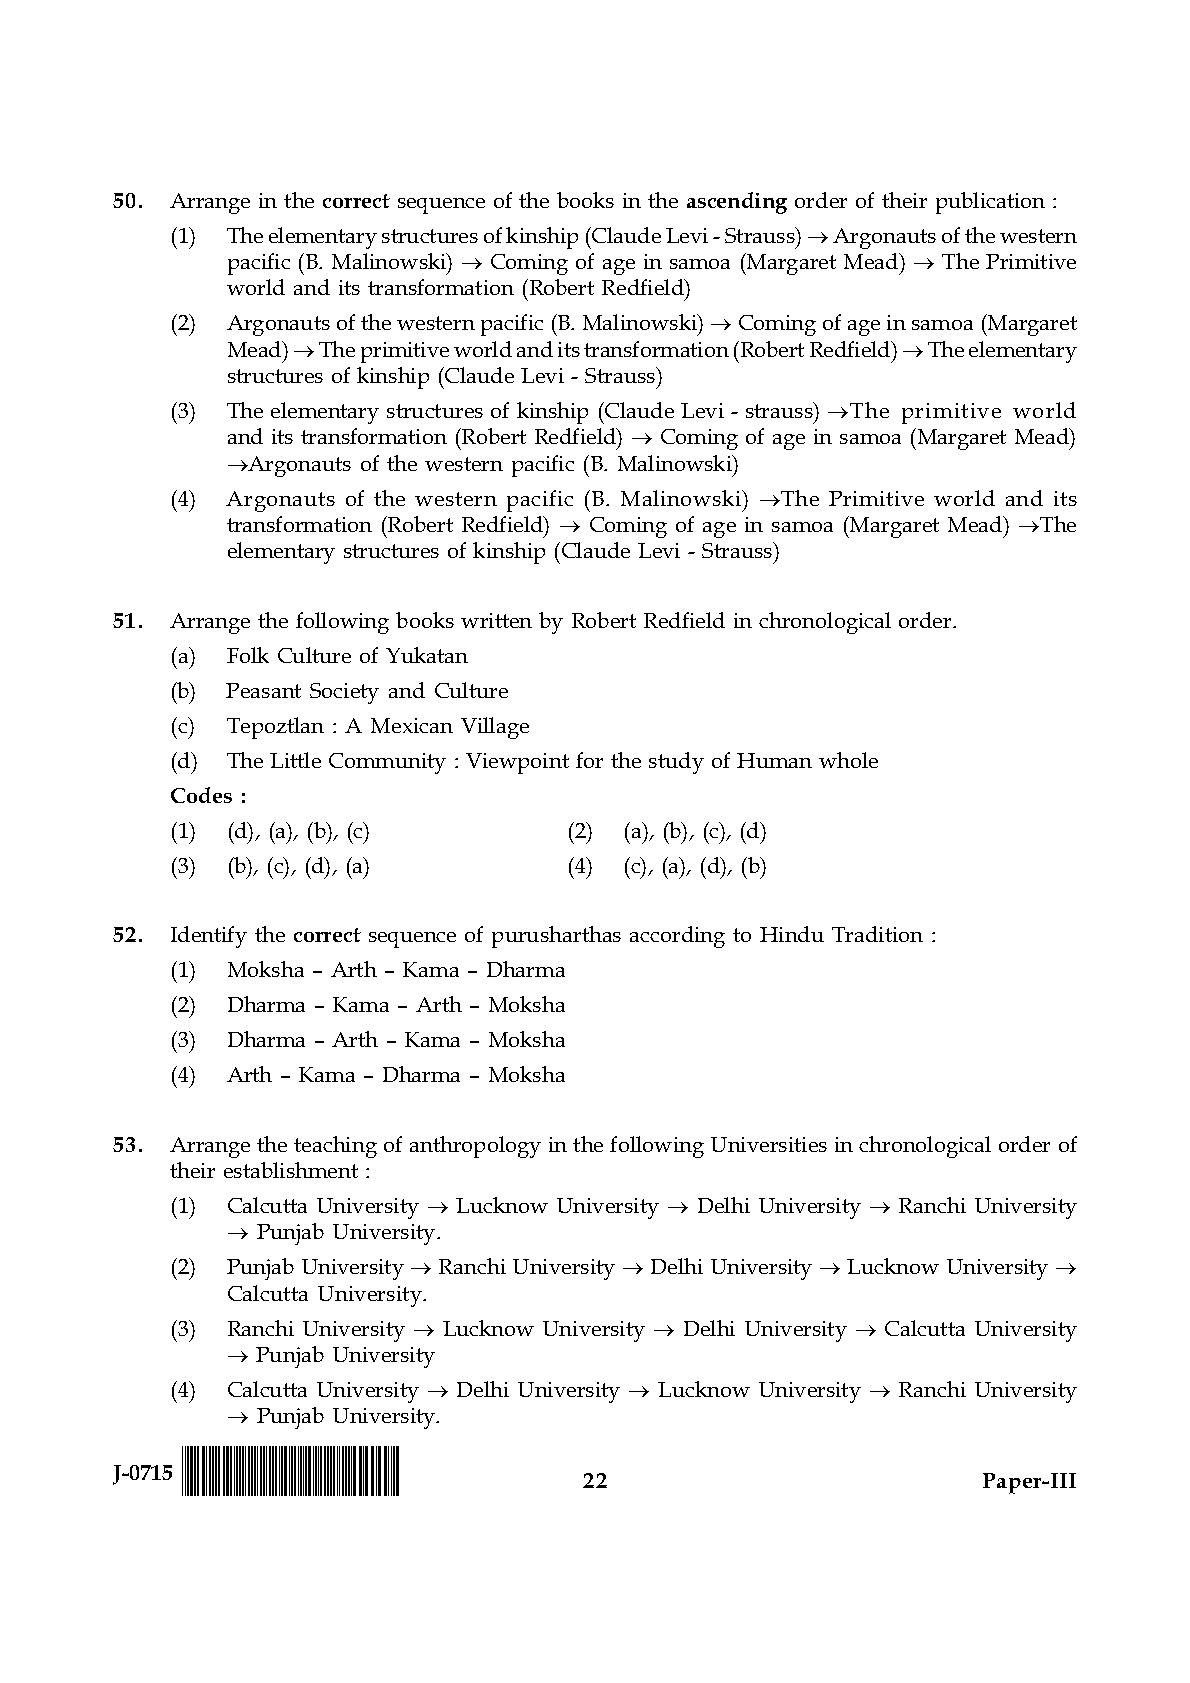 UGC NET Anthropology Question Paper III June 2015 22